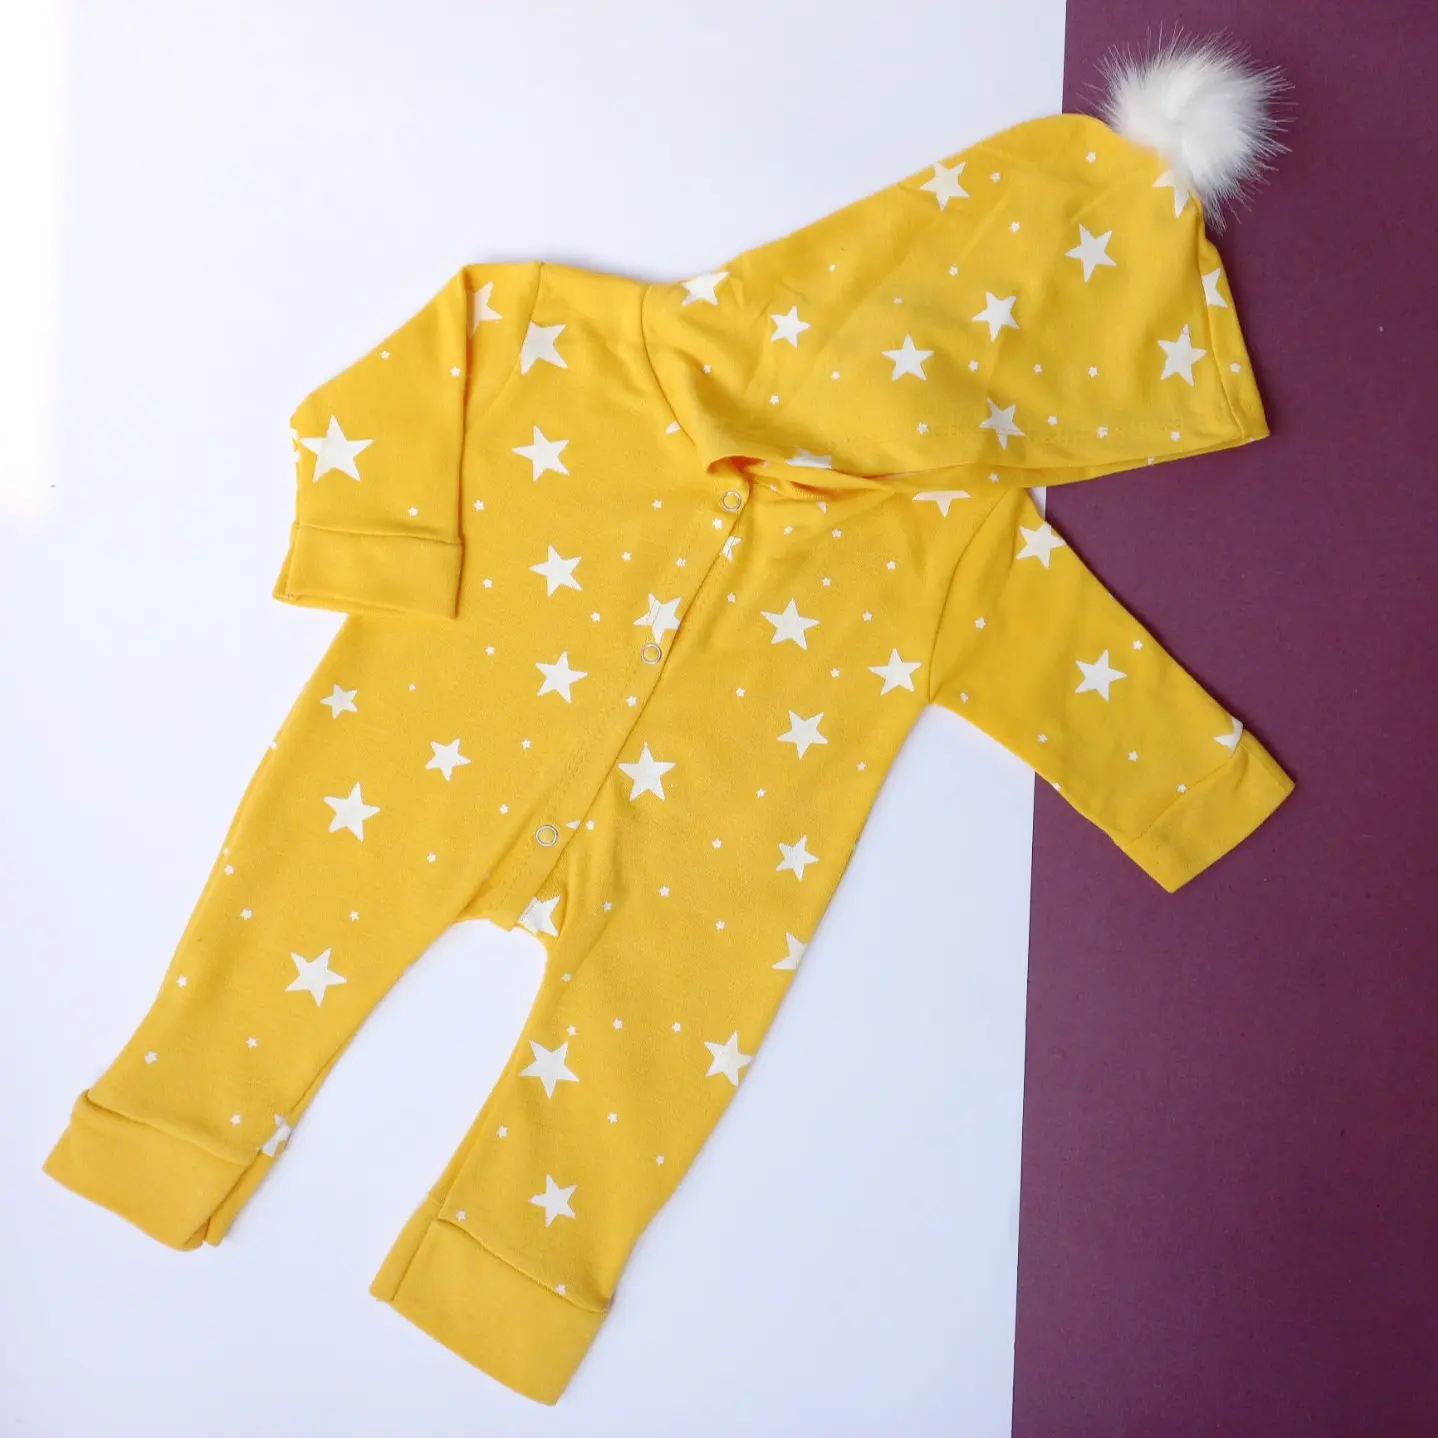 سرهمی نوزادی ستاره زرد با ستاره سفید سایز 1،2،3 - 1